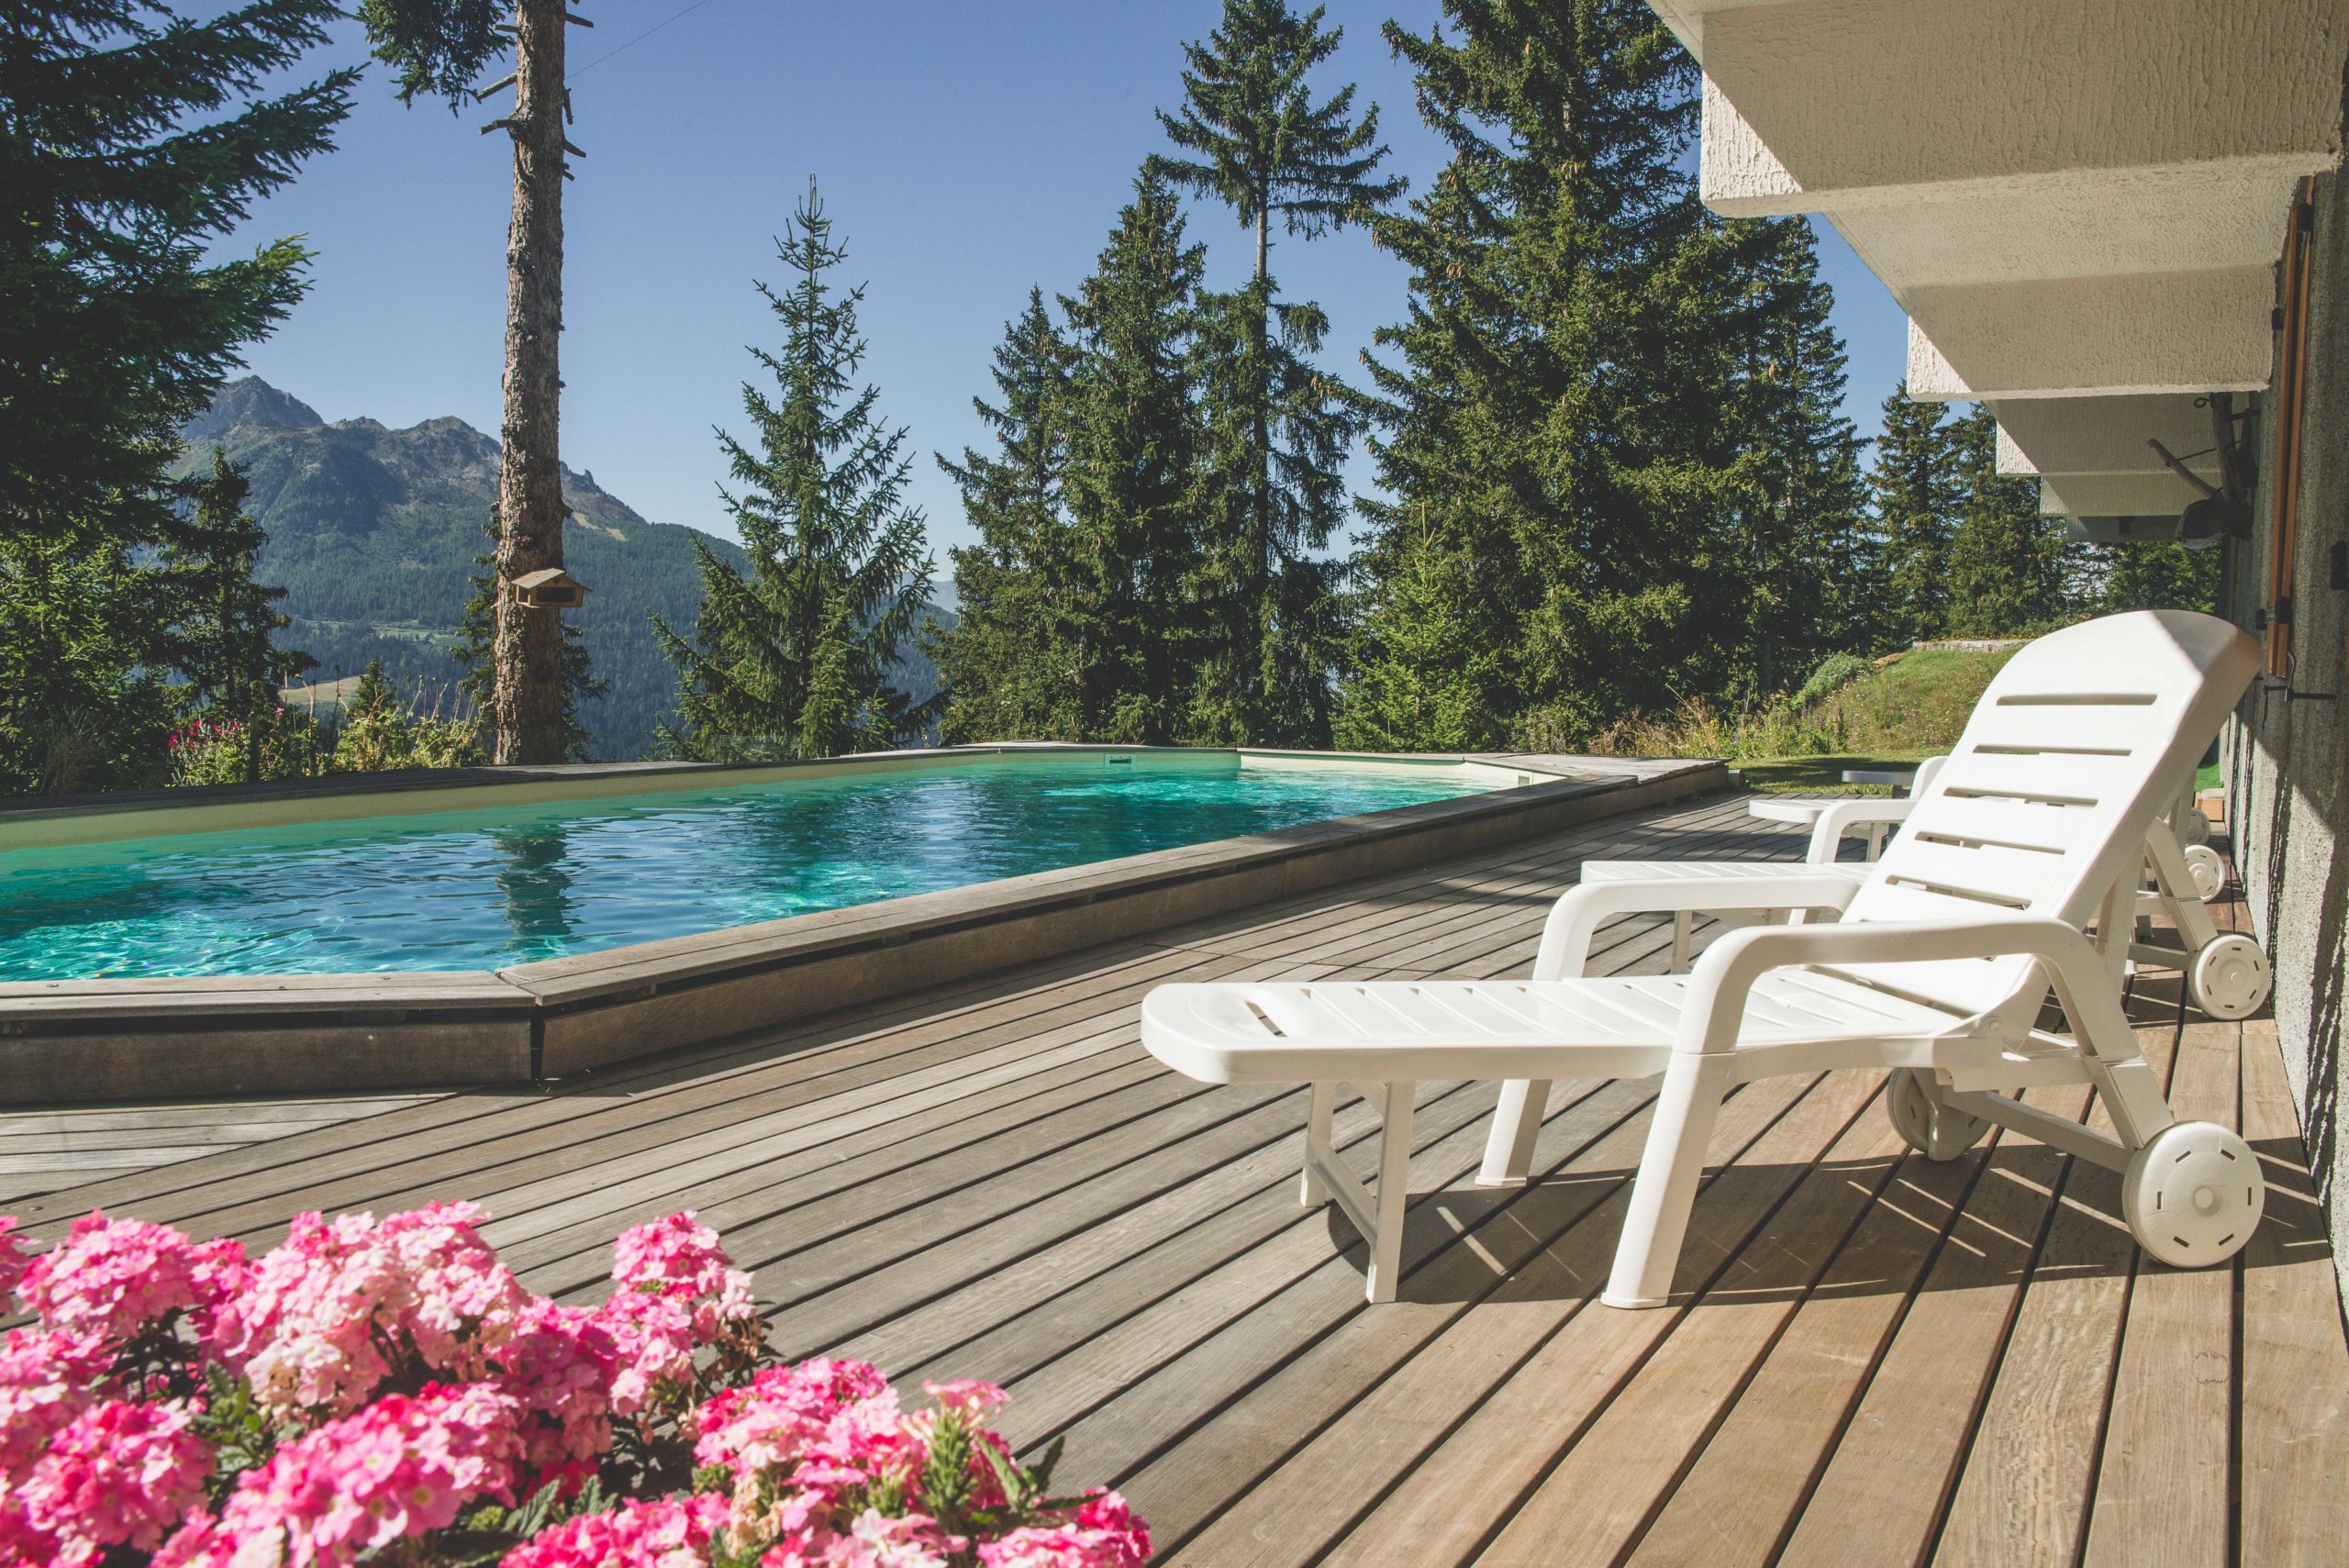 En été le chalet les Clarines propose une piscine extérieure chauffée avec une magnifique vue sur la vallée de la Tarentaise (Alpes).